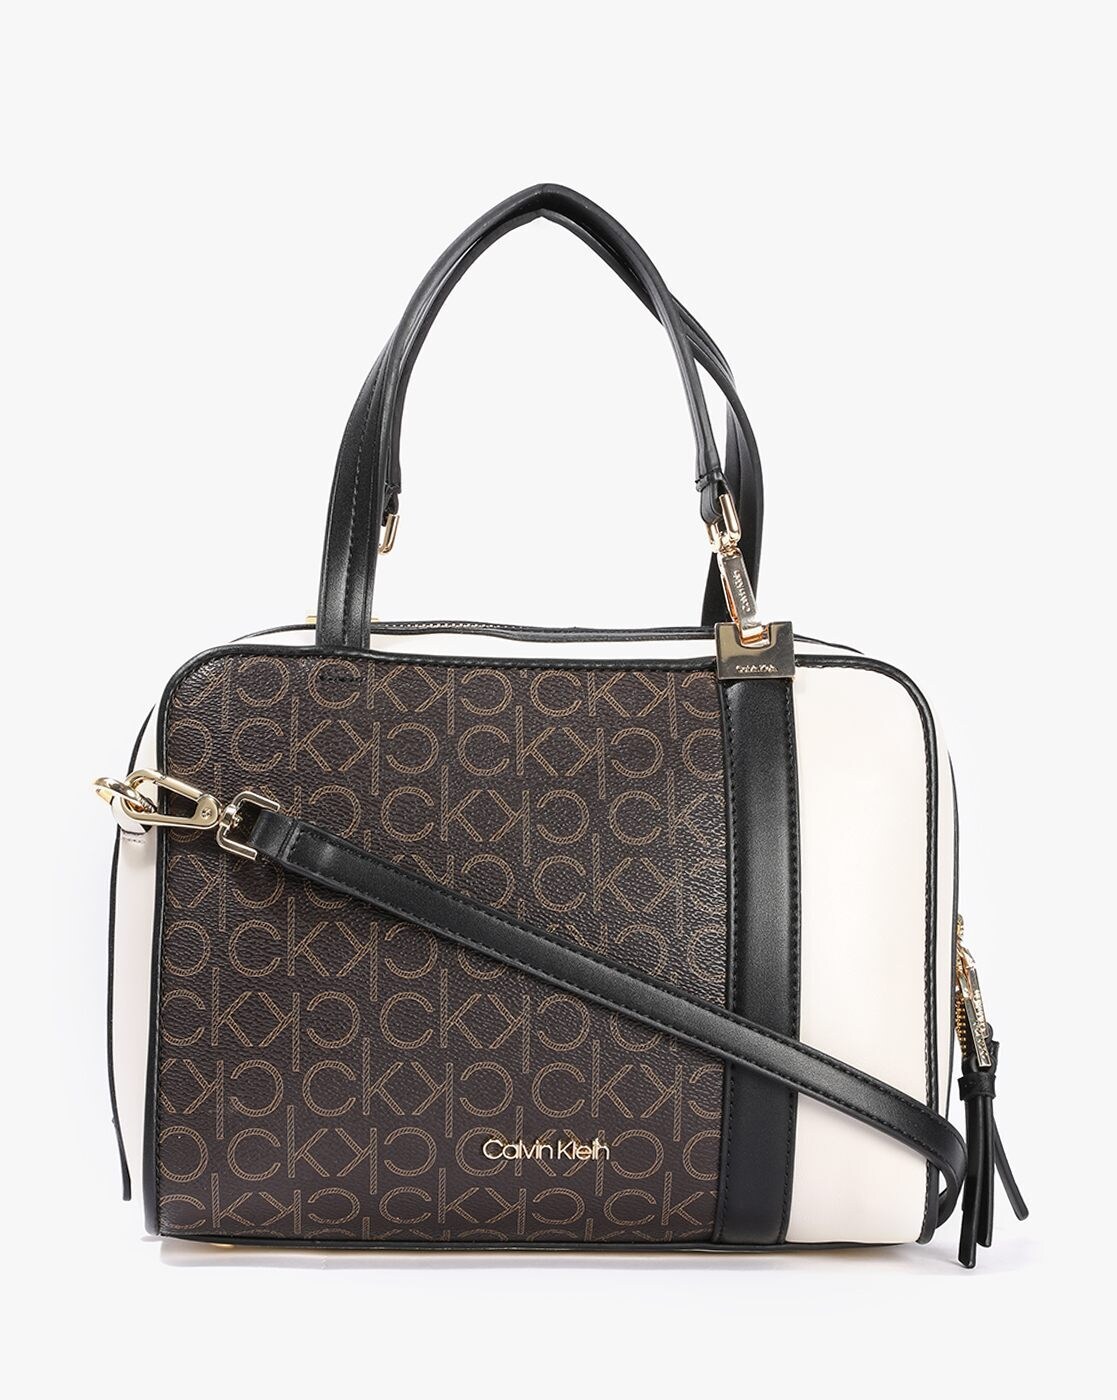 Calvin Klein Tassel Tote Bags for Women | Mercari